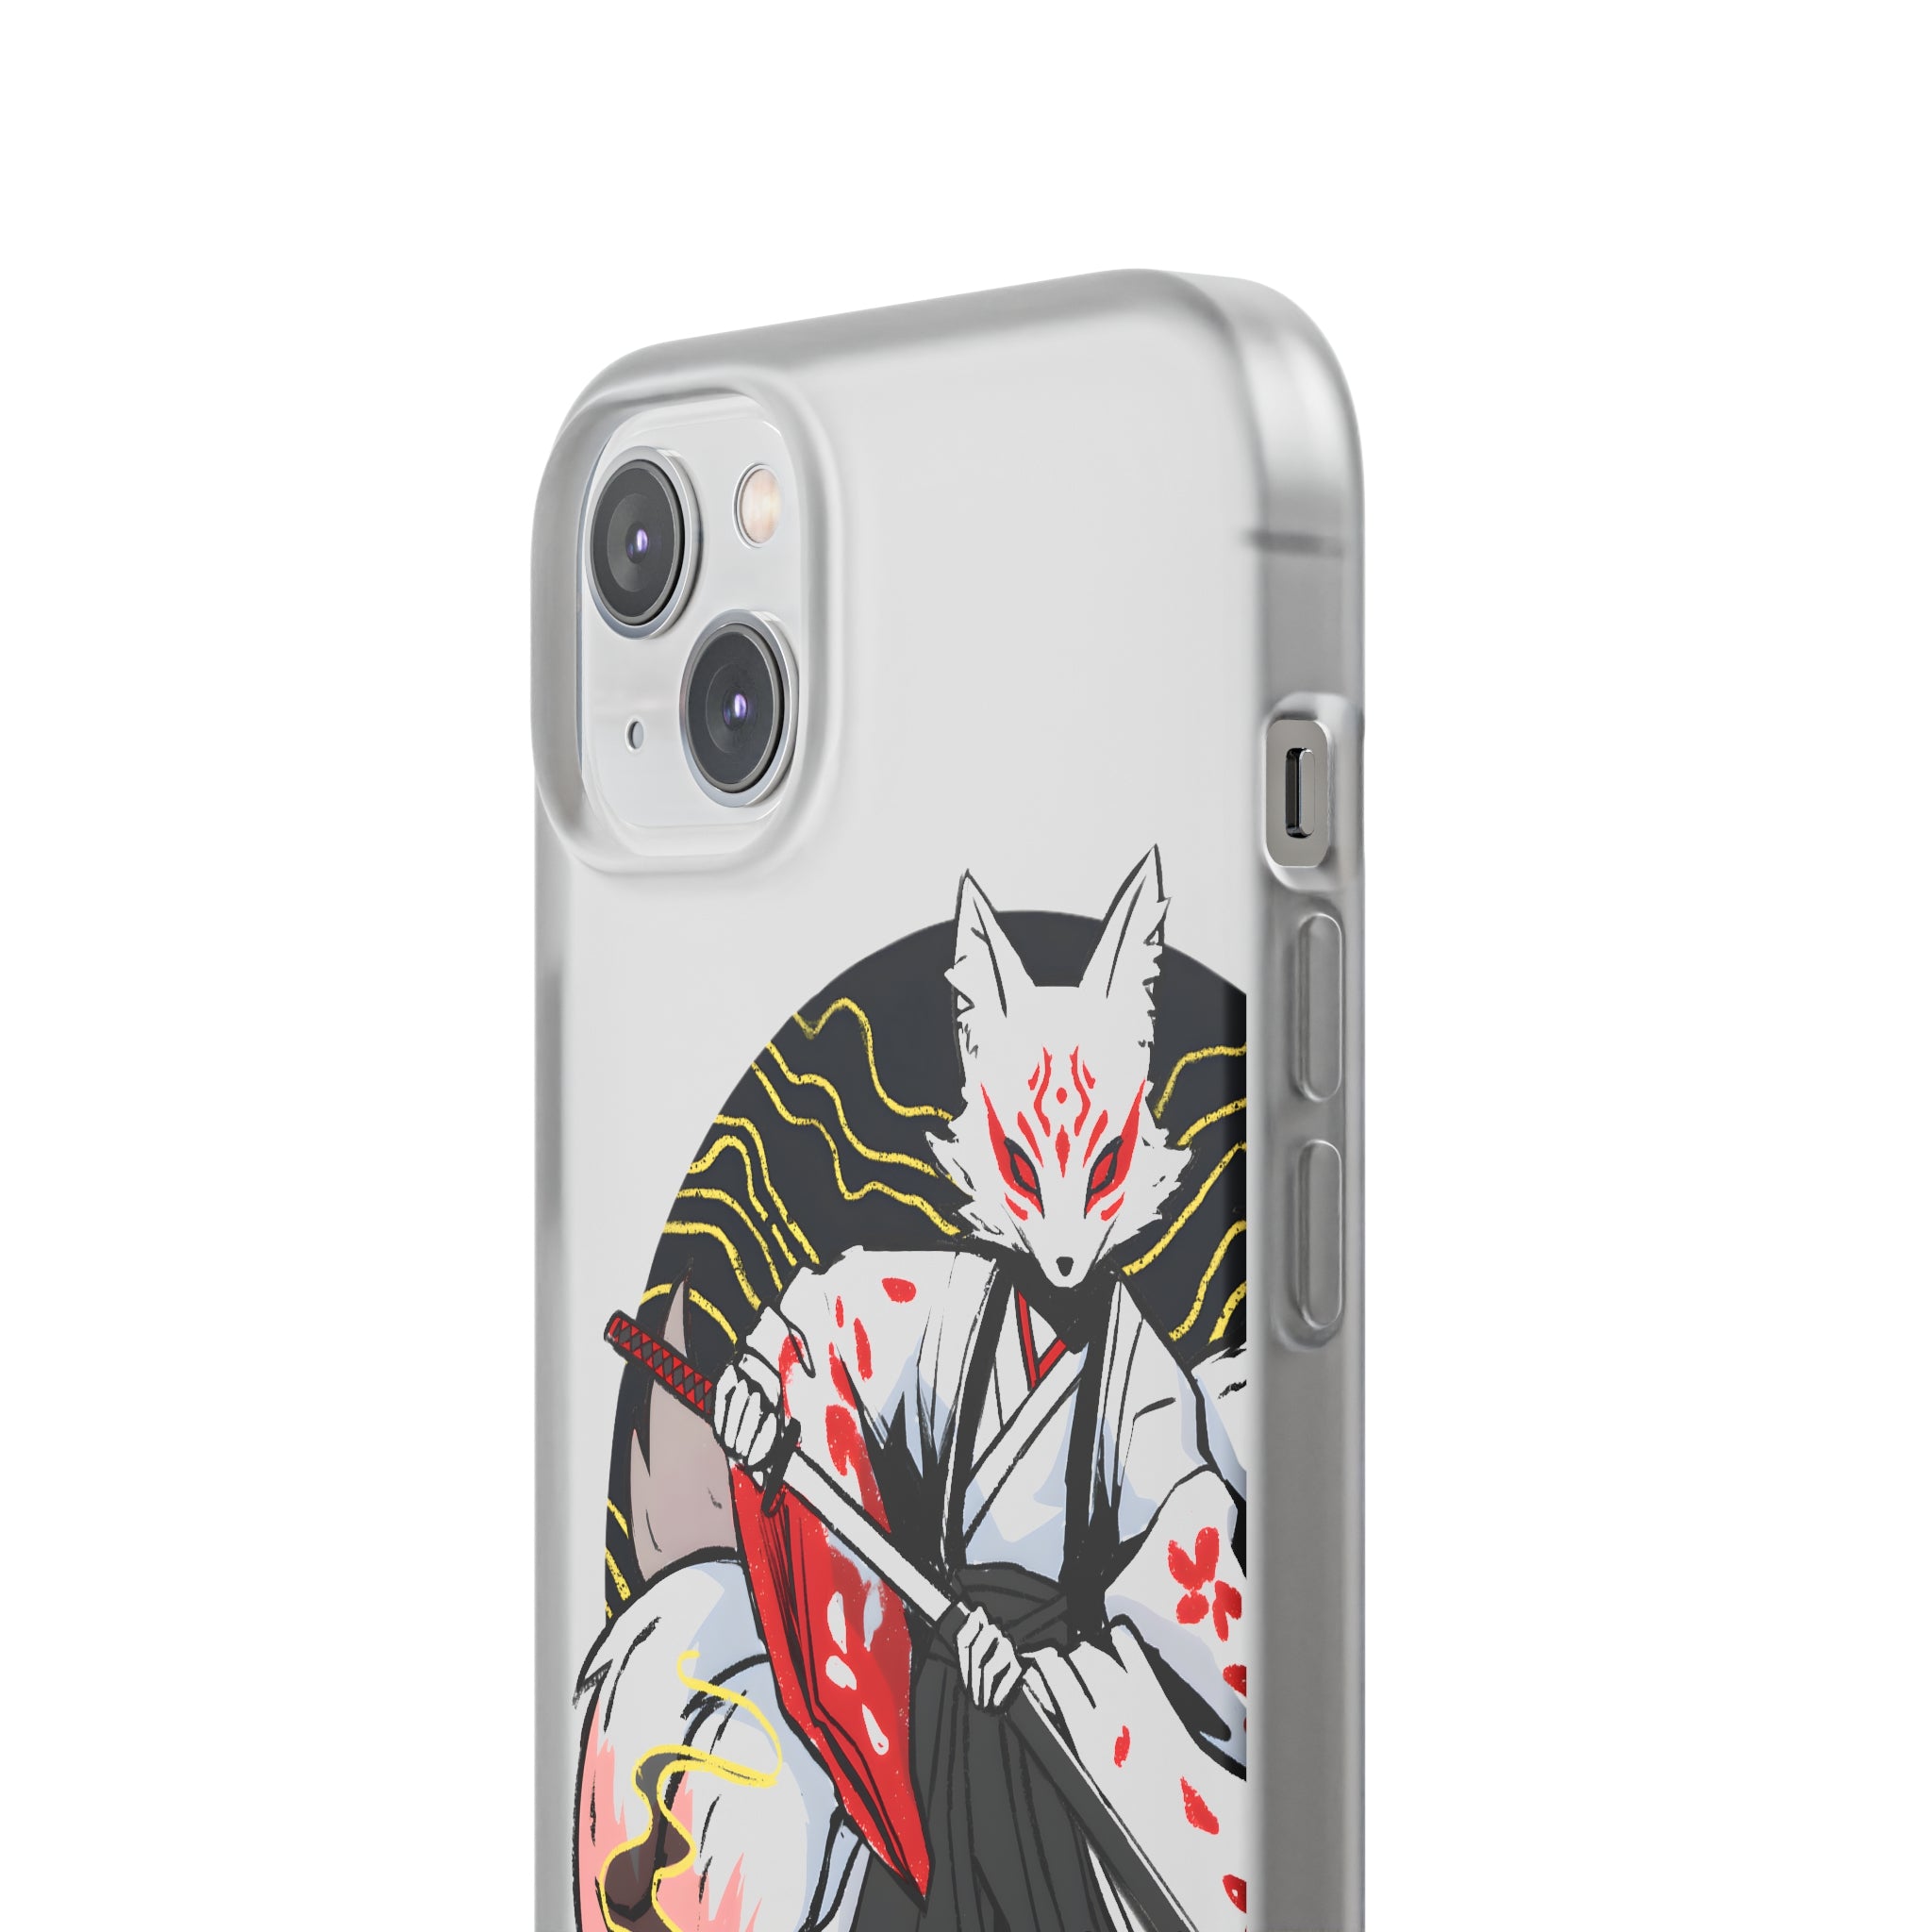 Kitsune Phone Case